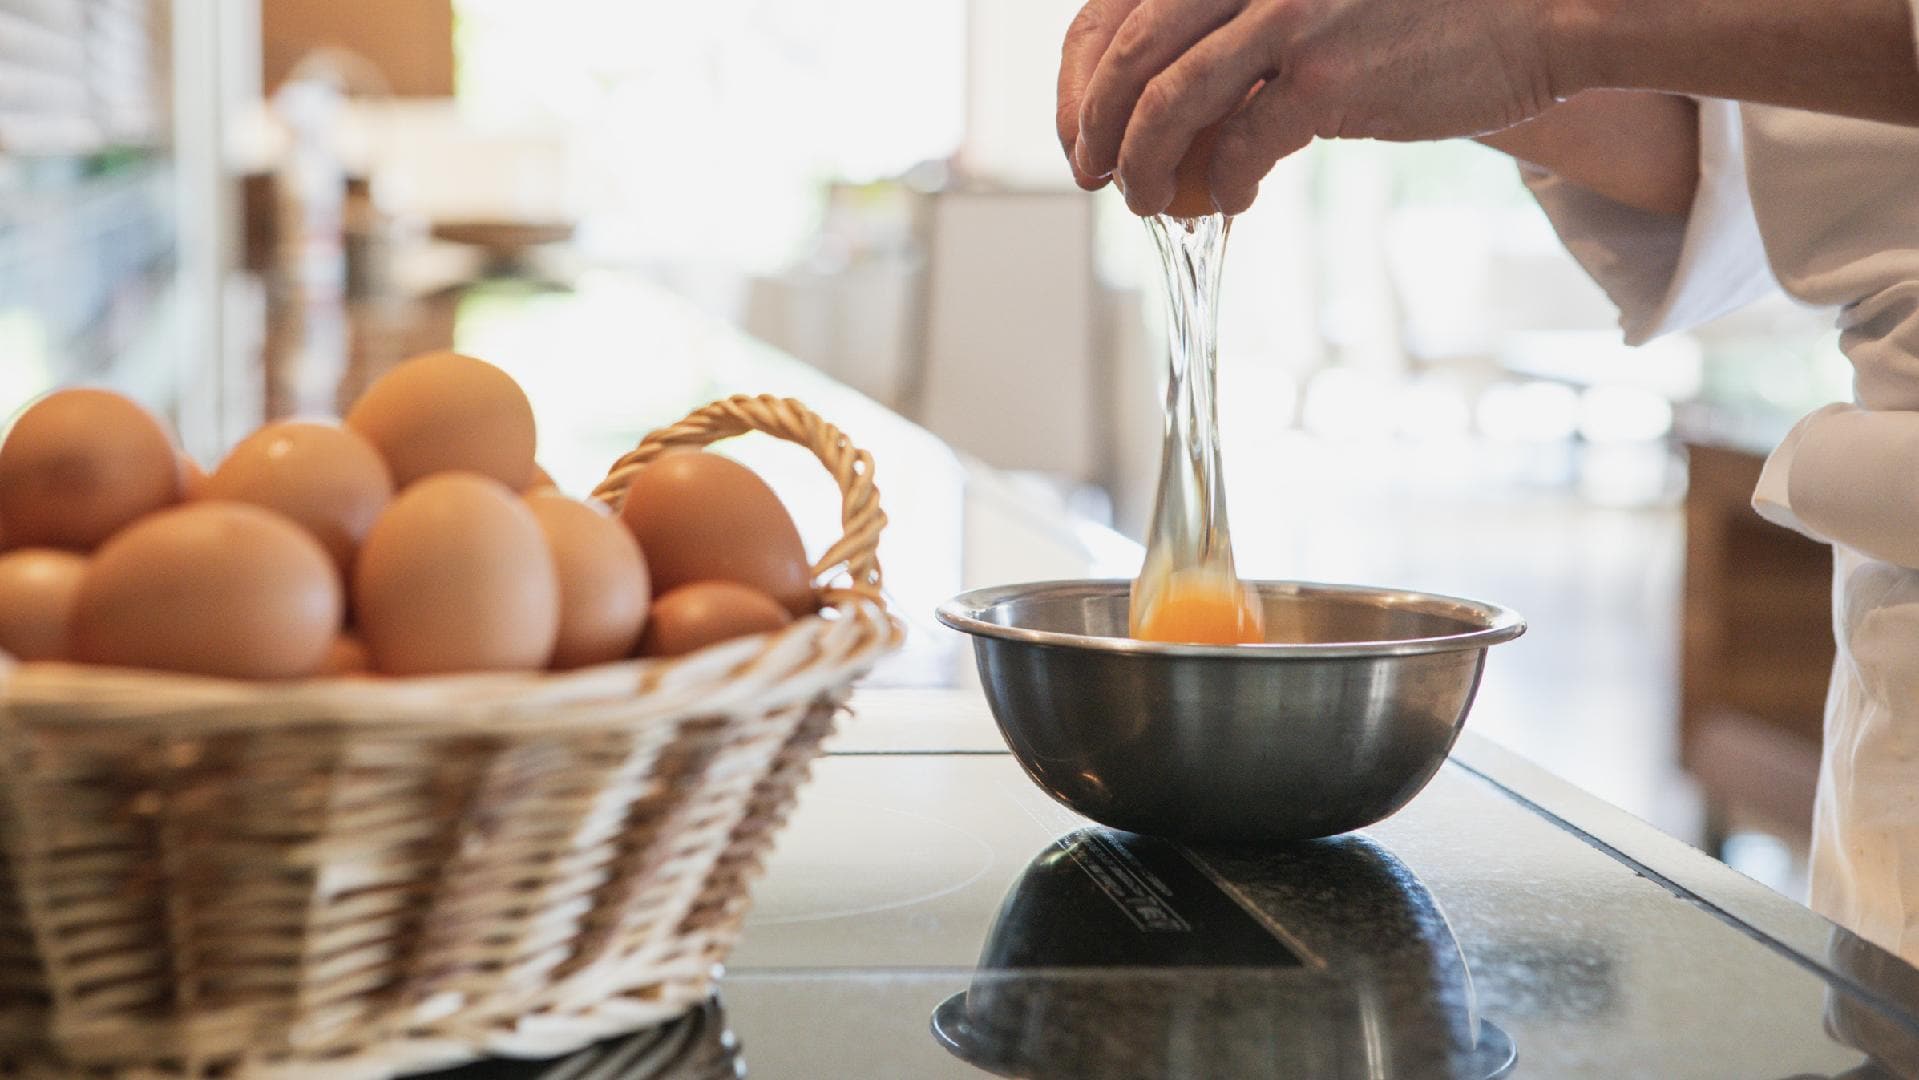 「미야기 농원」평목 계란을 사용한 계란 요리를 제공합니다.